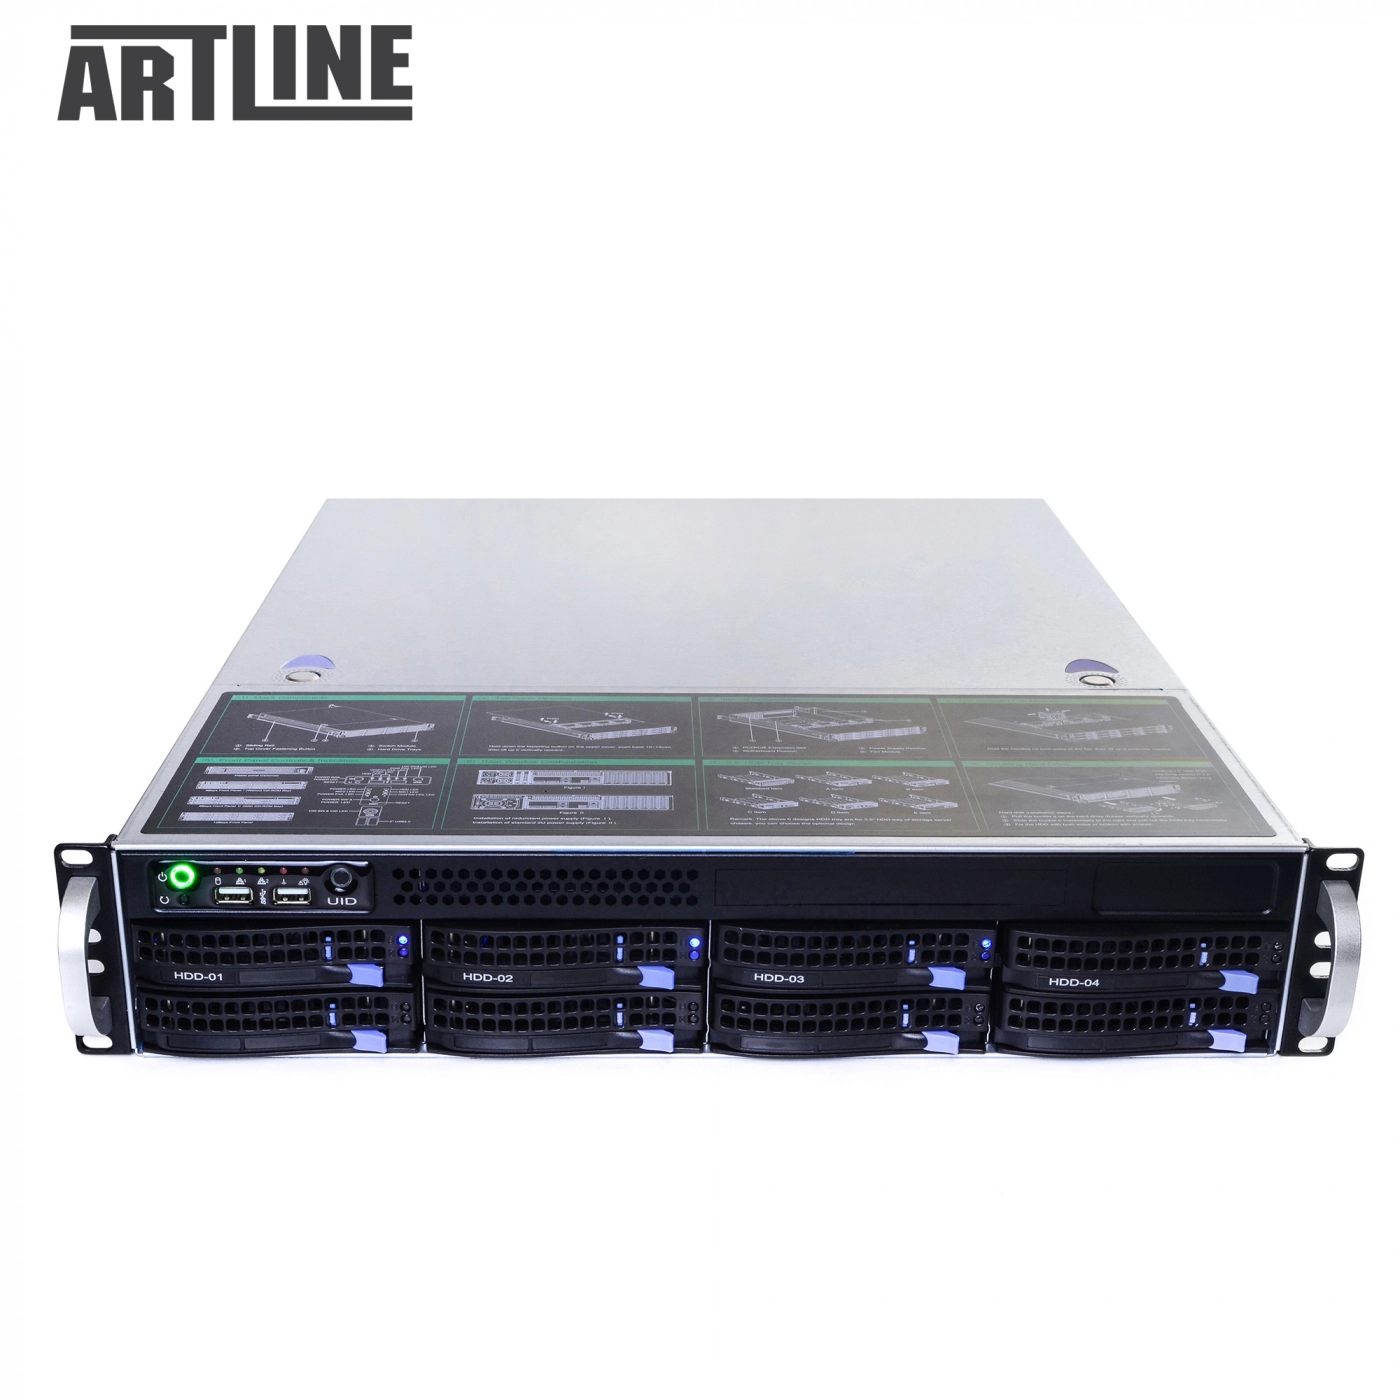 Купить Сервер ARTLINE Business R39v01 - фото 10